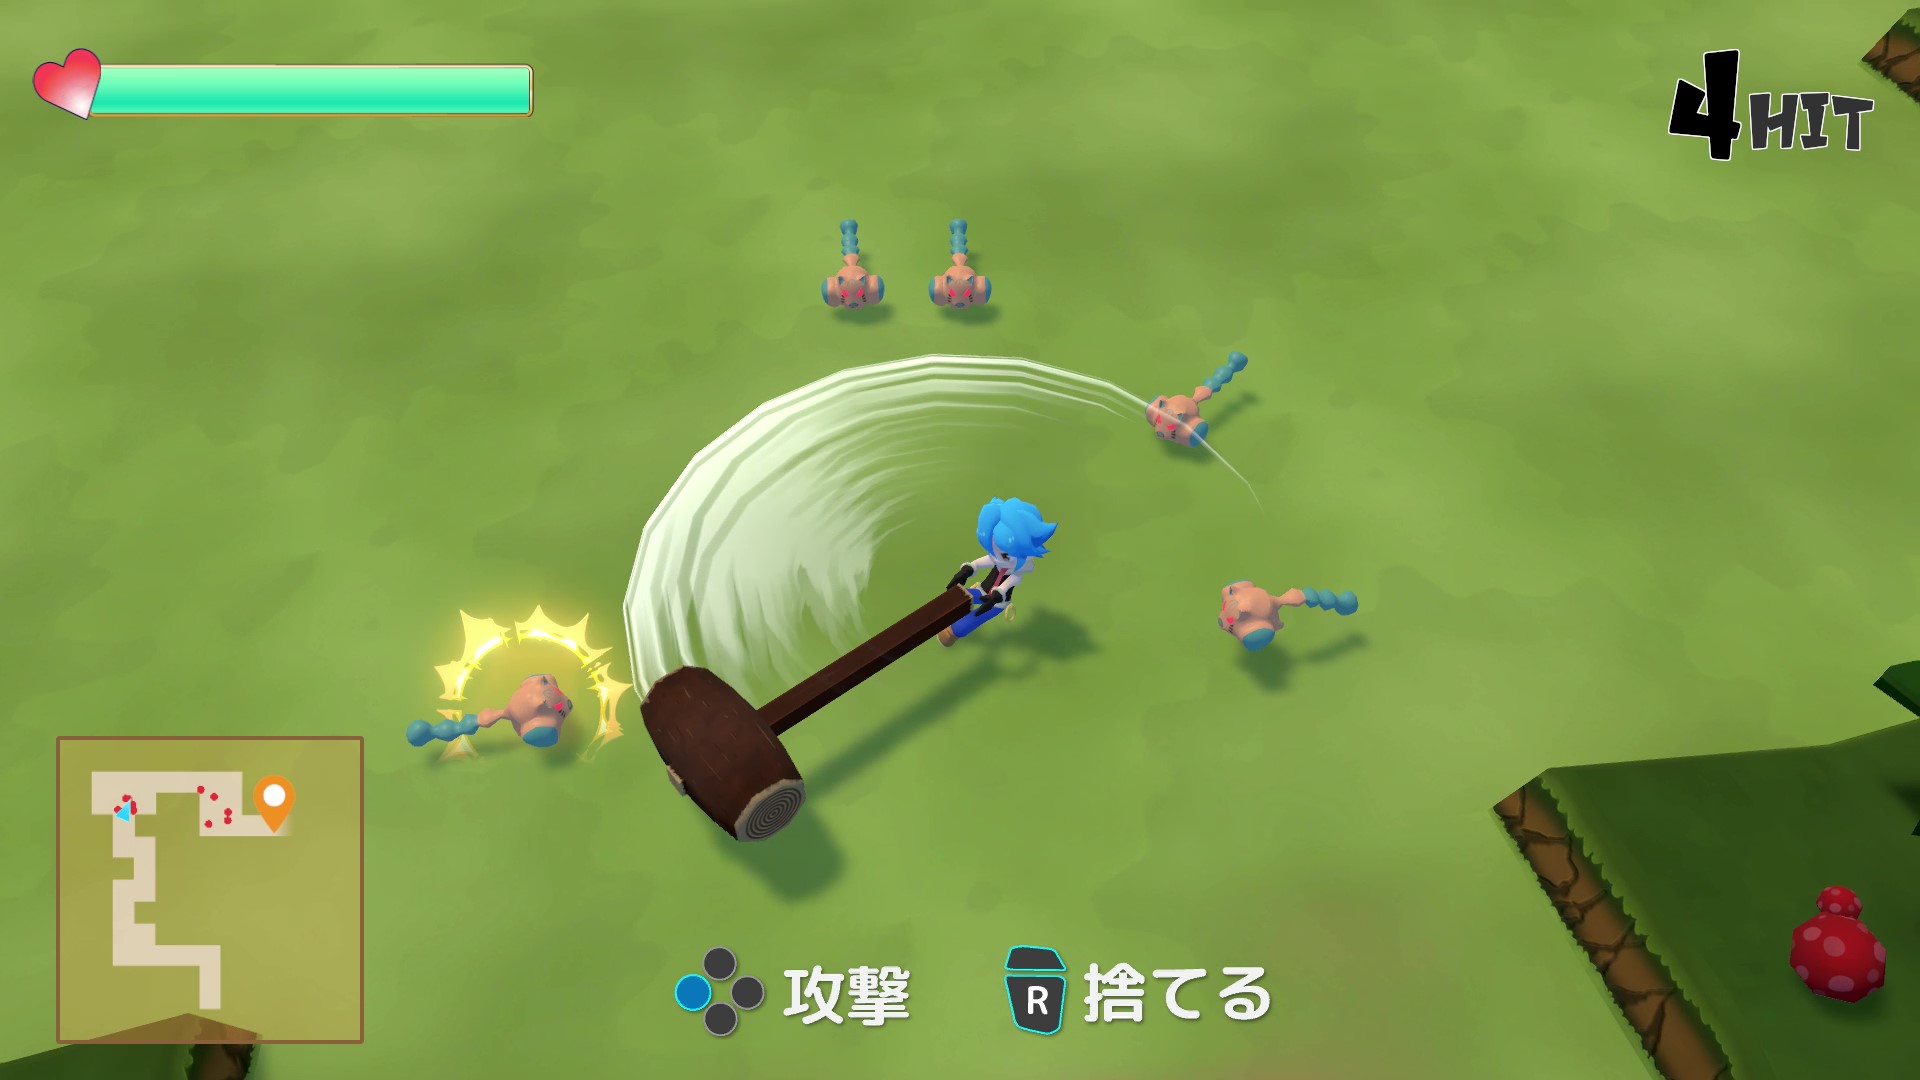 ぶんまわしヒーロー / Full Swing Hero screenshot